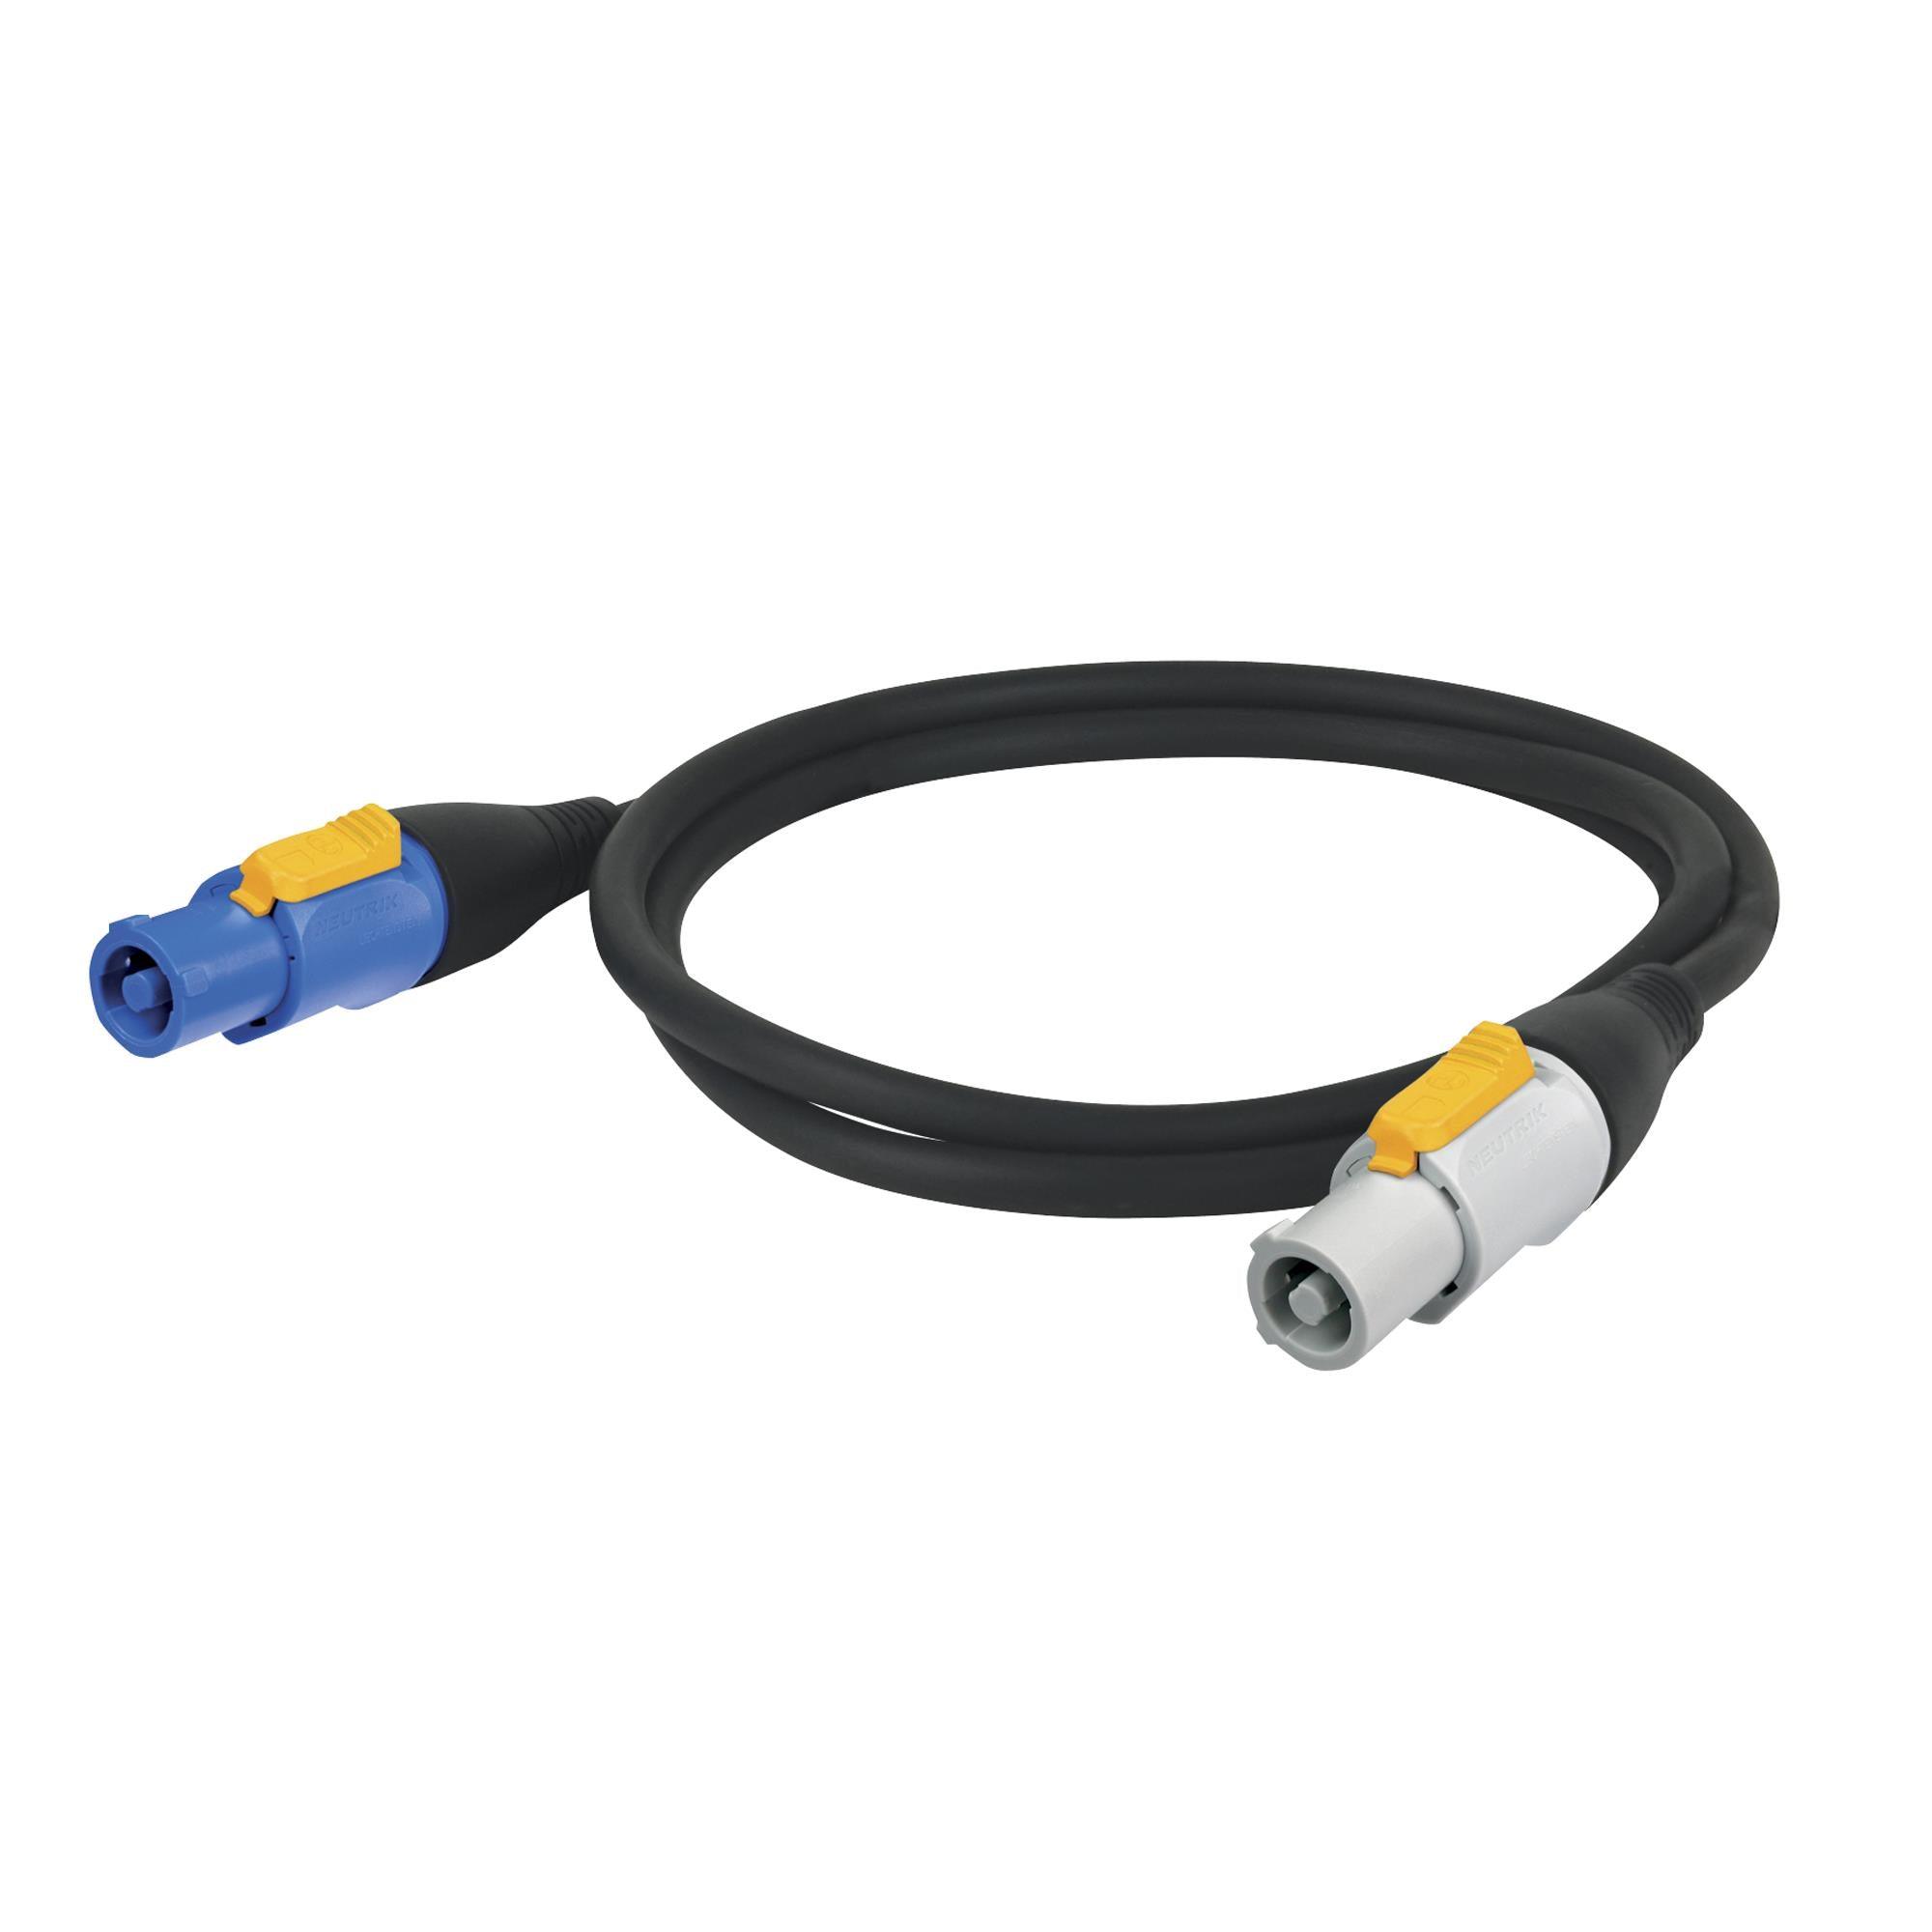 DAP Power Cable Neutrik powerCON 1.5M Link Lead M/F 3x 1.5 mm - DY Pro Audio